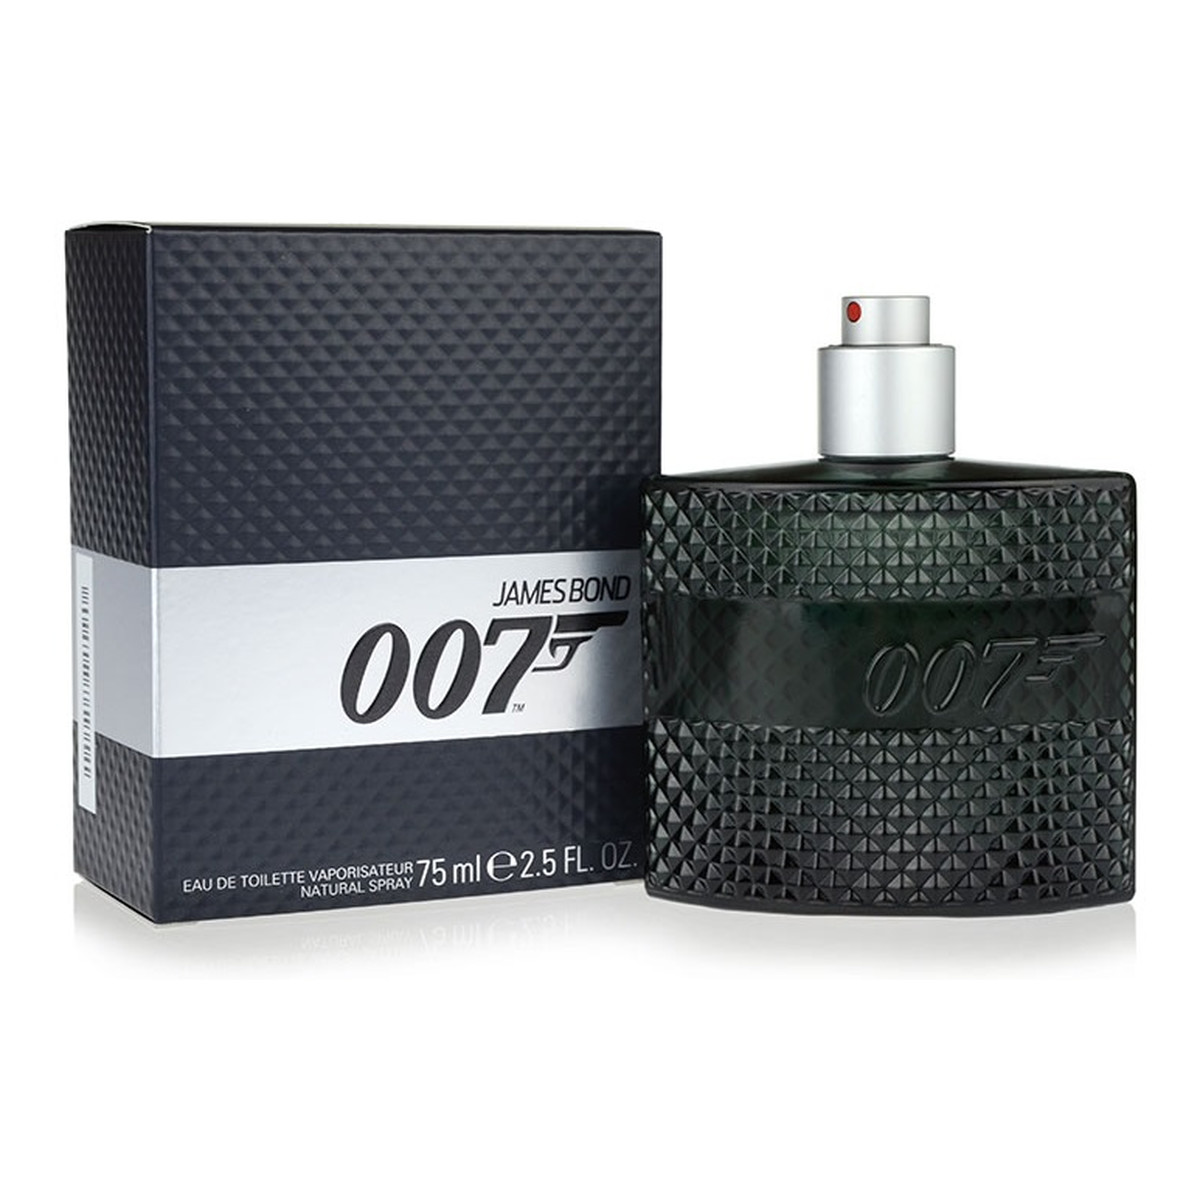 James Bond 007 Limited Edition woda toaletowa dla mężczyzn 75ml